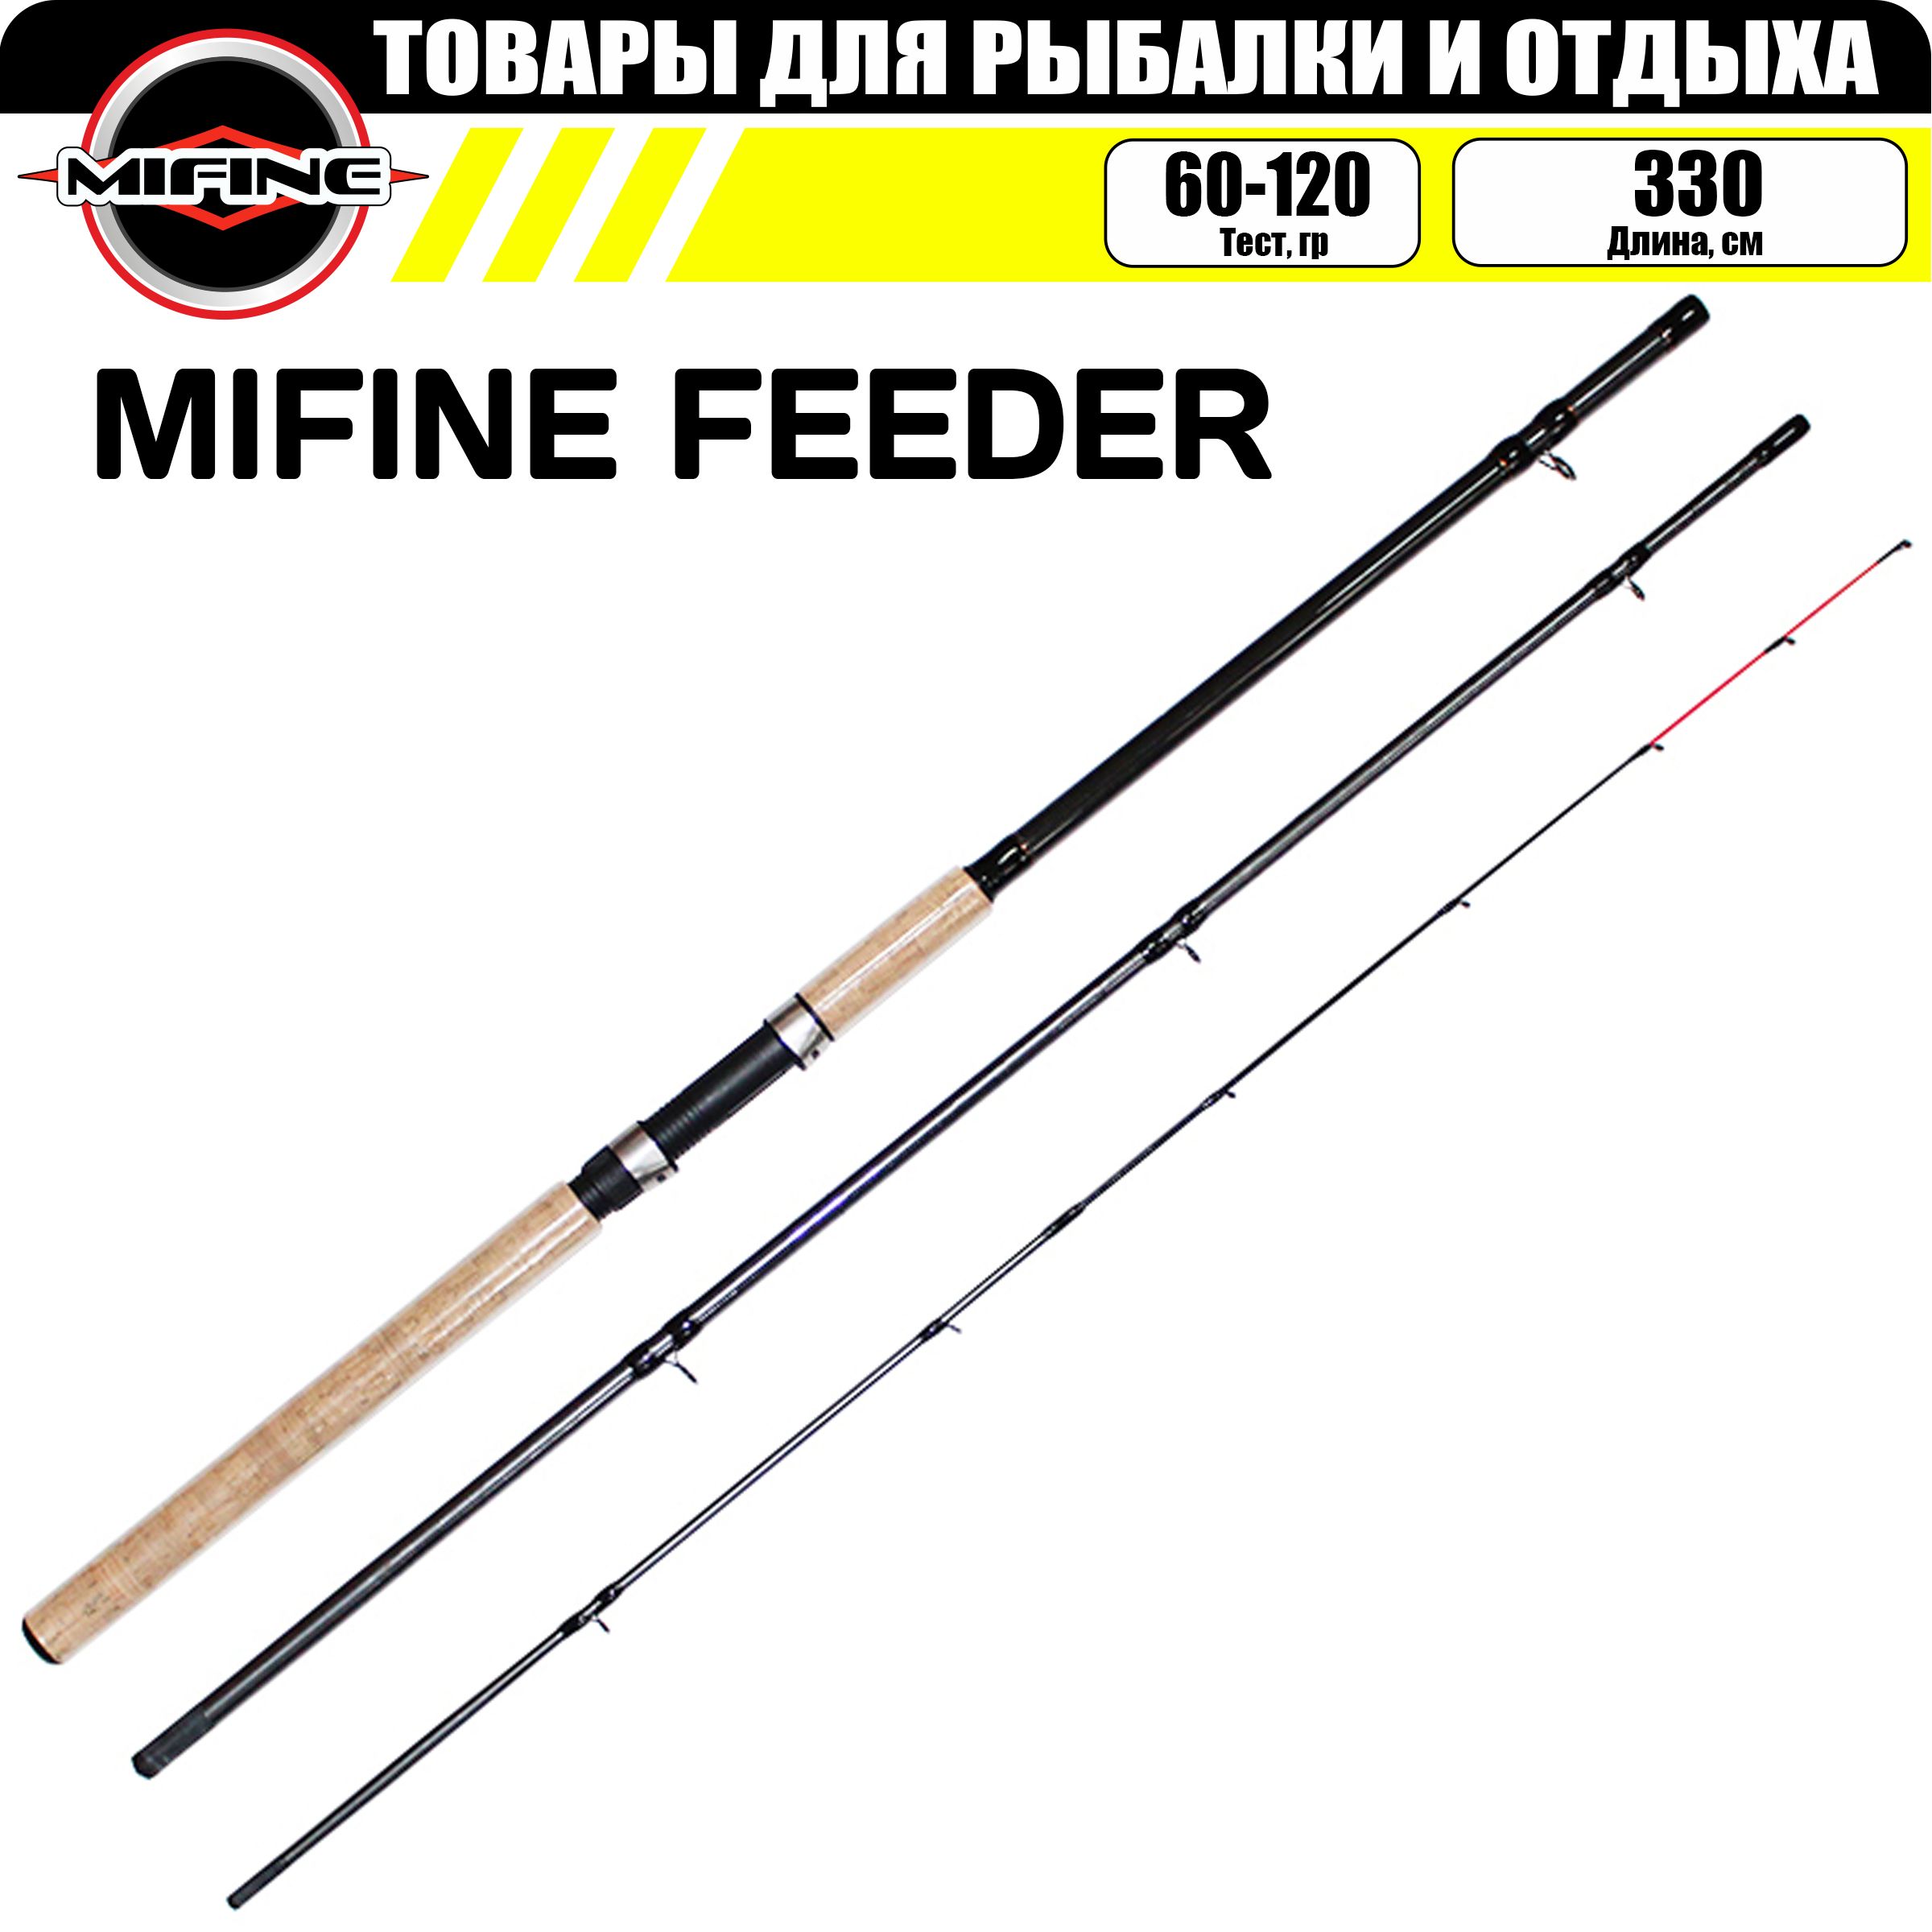 Удилище фидерное MIFINE FEEDER 3,3м (60-120гр), для рыбалки, рыболовное, фидер